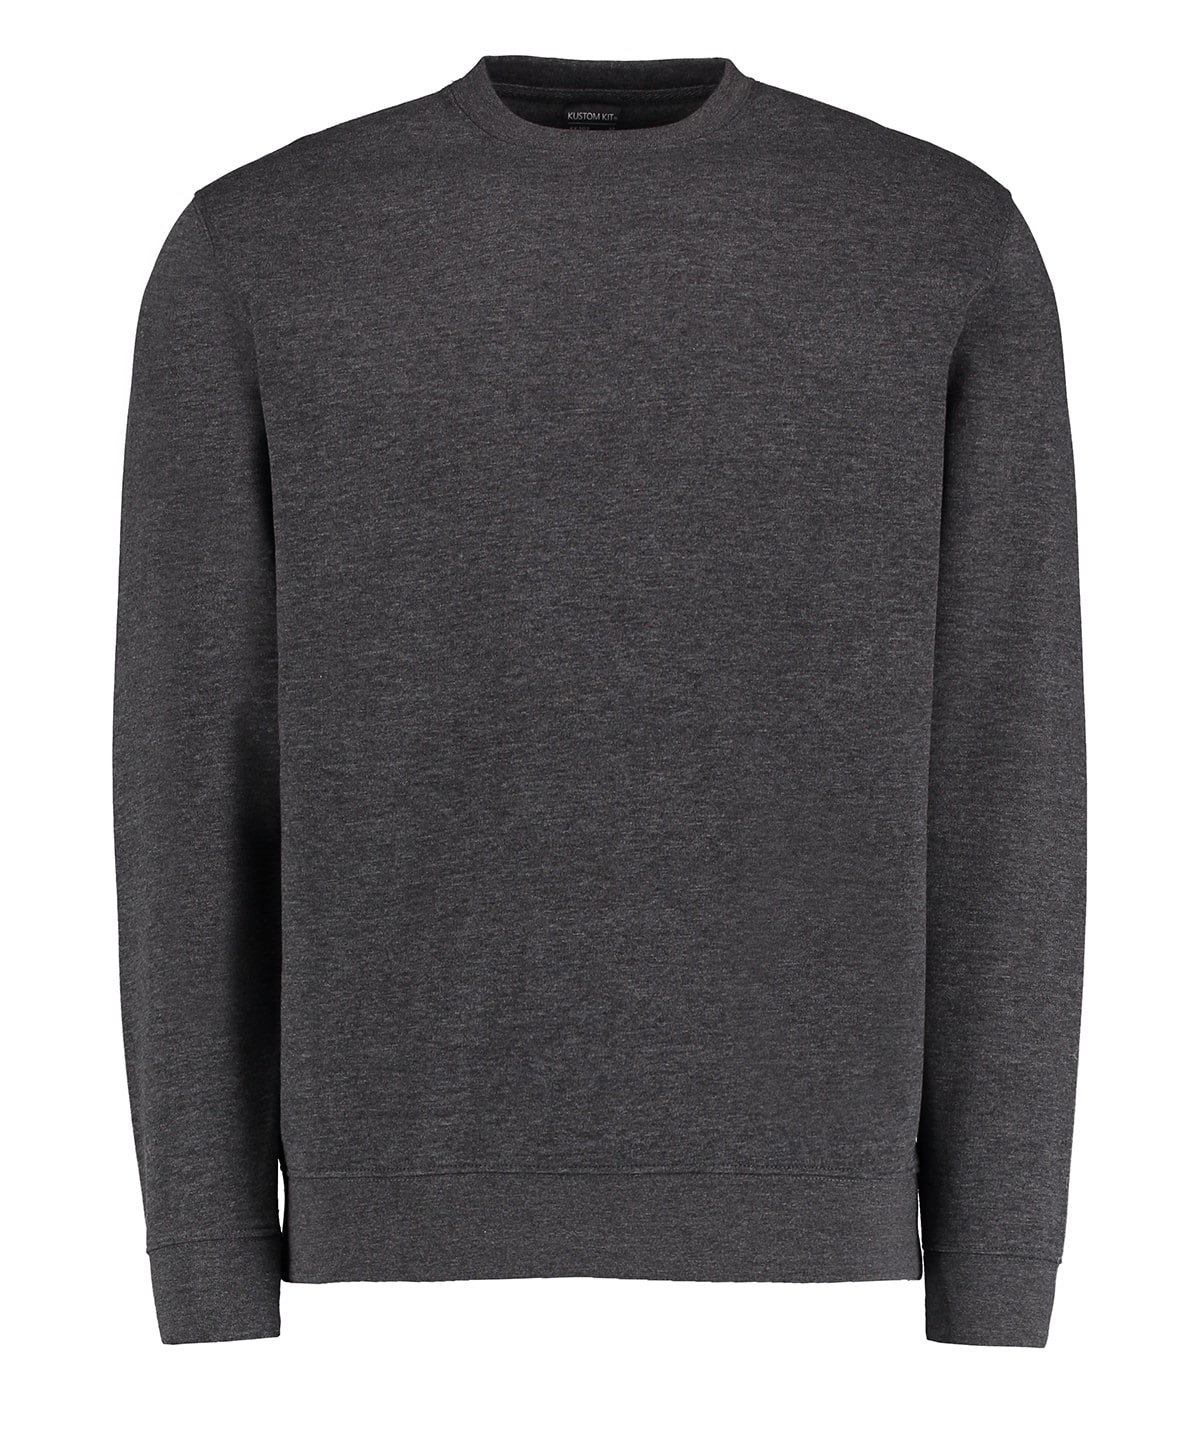 Kustom Kit Klassic Long Sleeve Sweatshirt